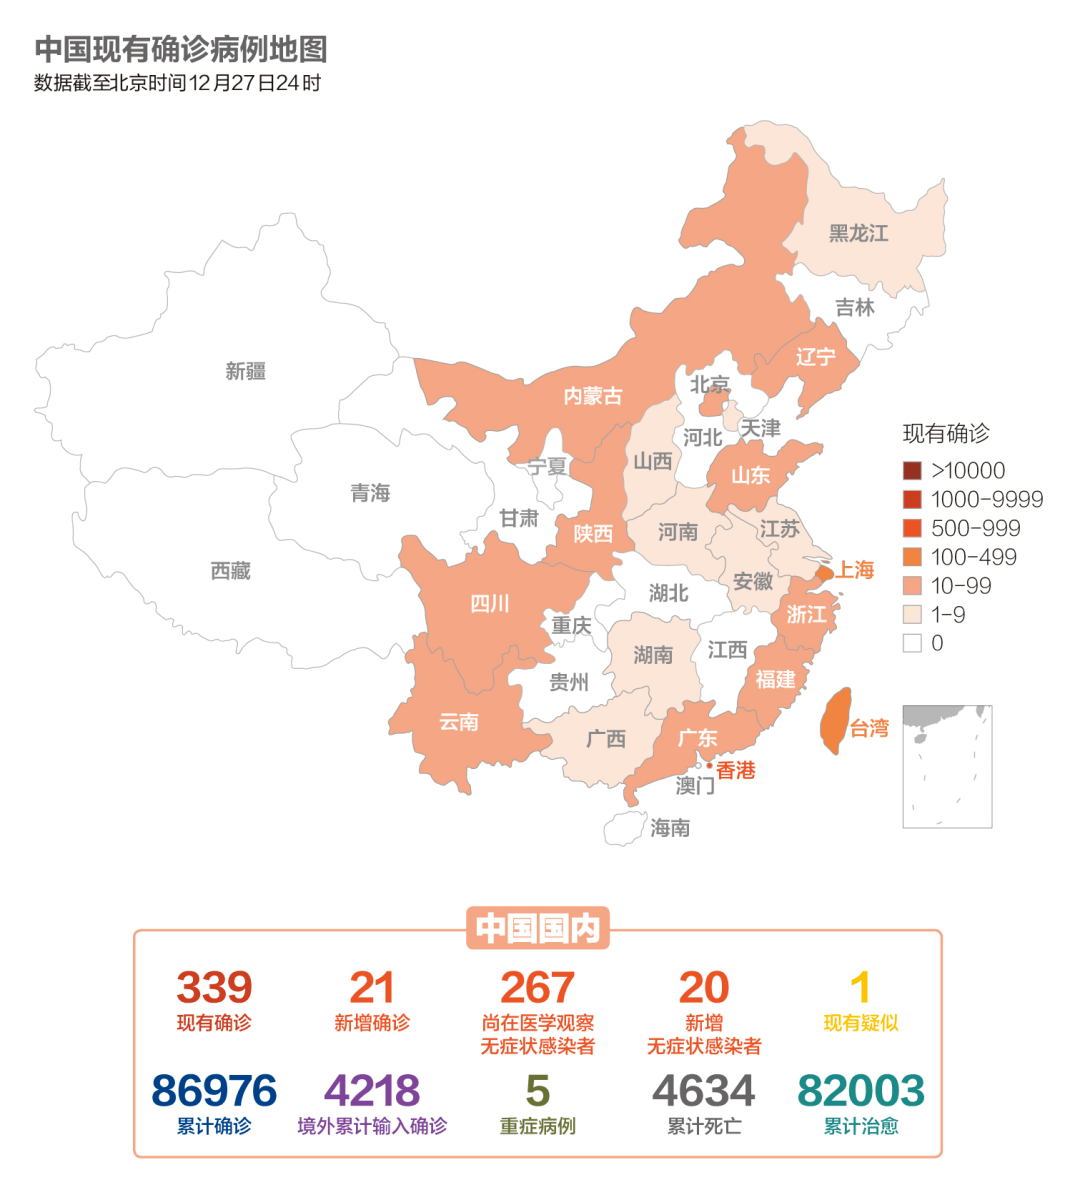 图1截止12月28日12时,国内疫情中风险区22个:北京市(3个),辽宁省(17个